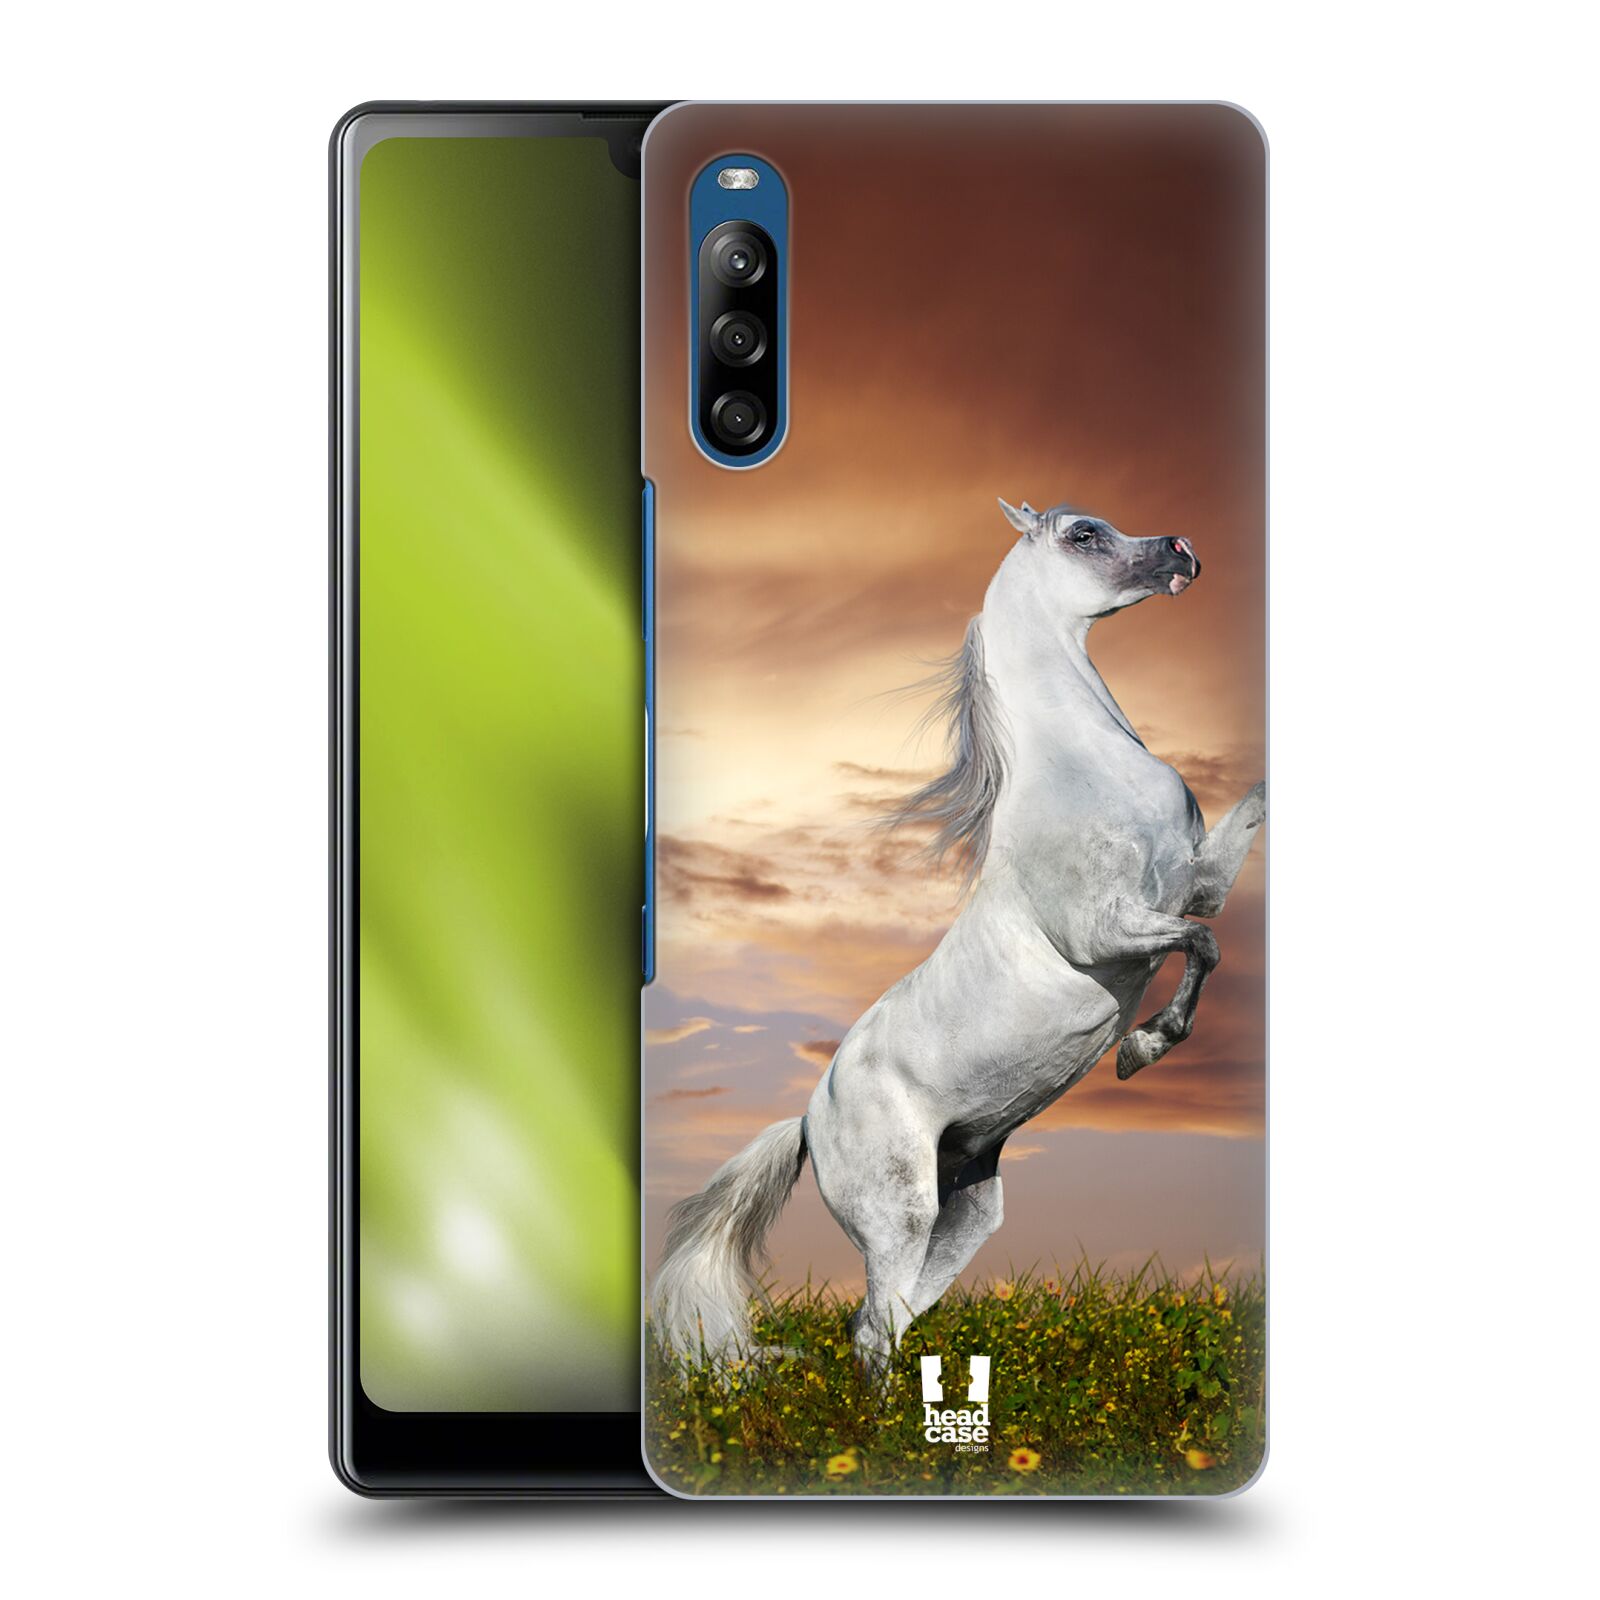 Zadní obal pro mobil Sony Xperia L4 - HEAD CASE - Svět zvířat divoký kůň